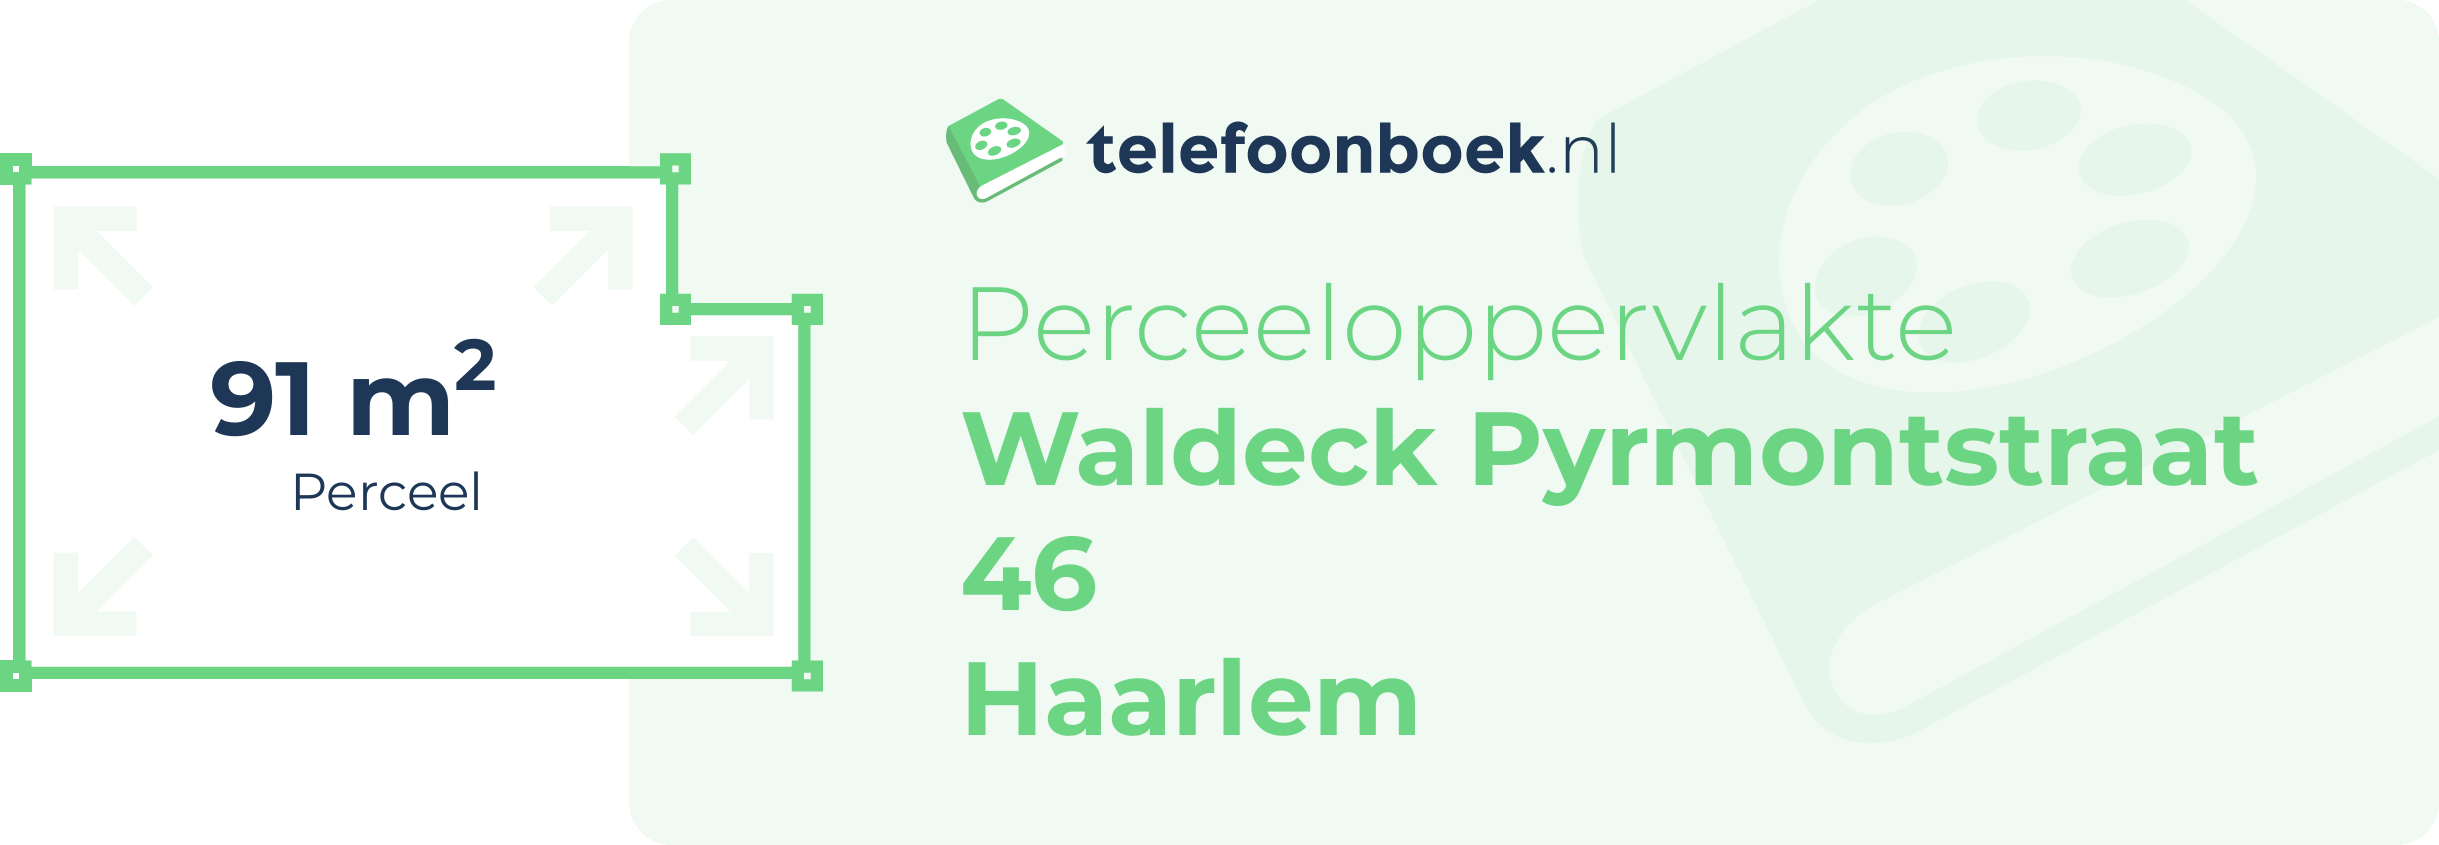 Perceeloppervlakte Waldeck Pyrmontstraat 46 Haarlem